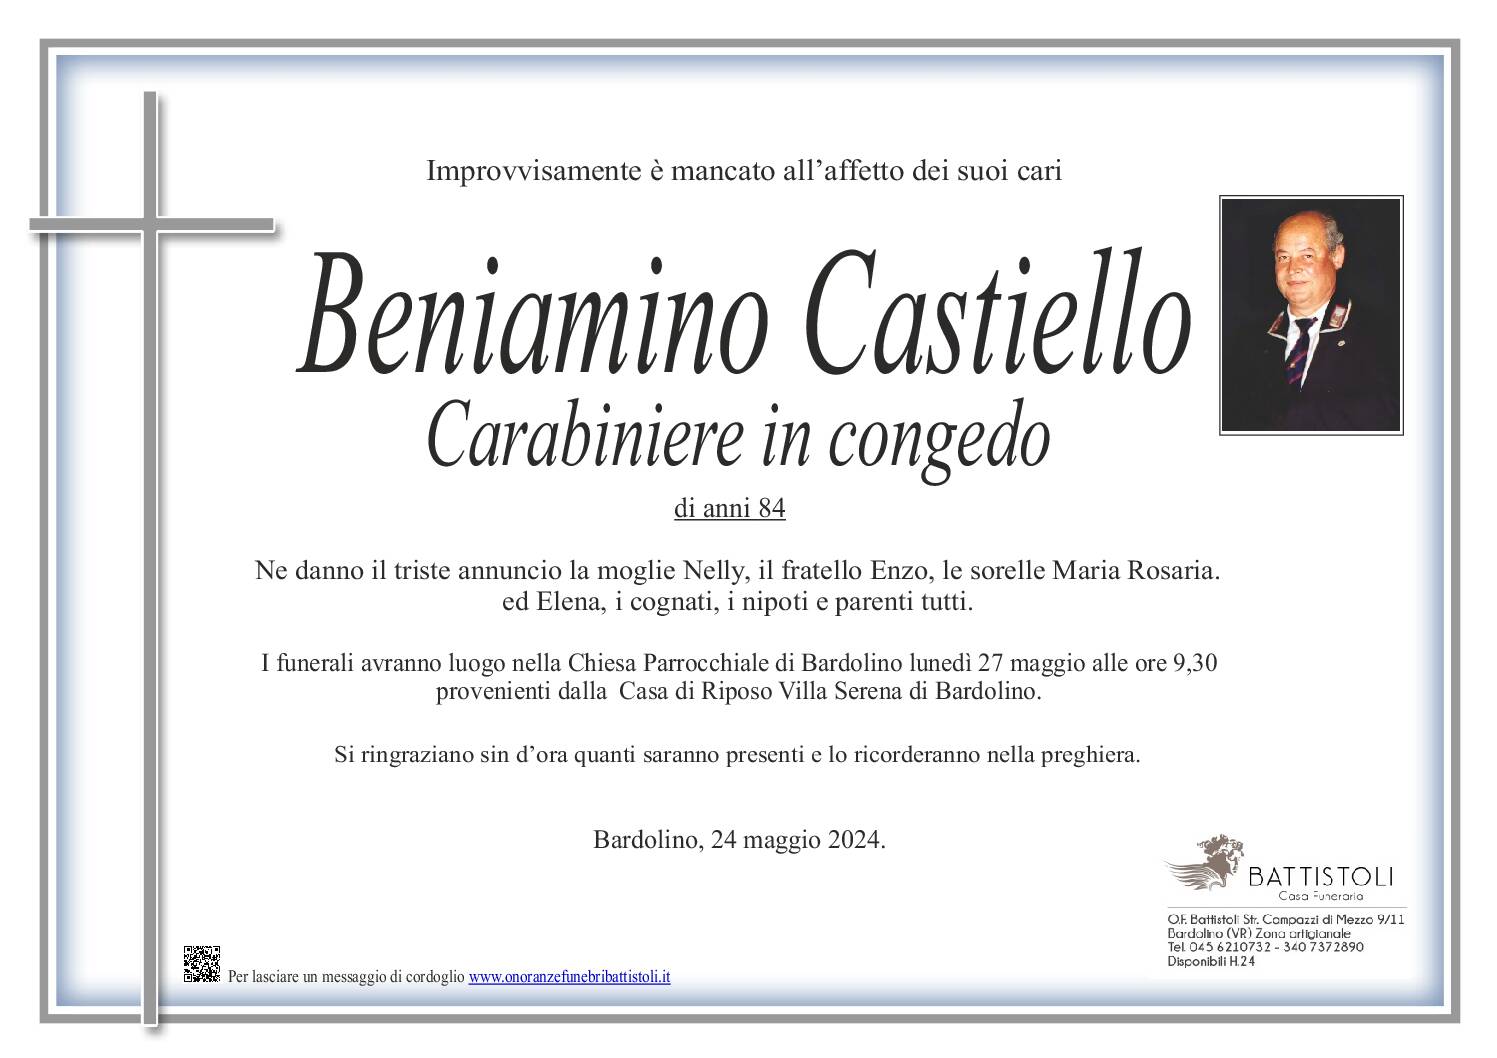 Castiello Beniamino